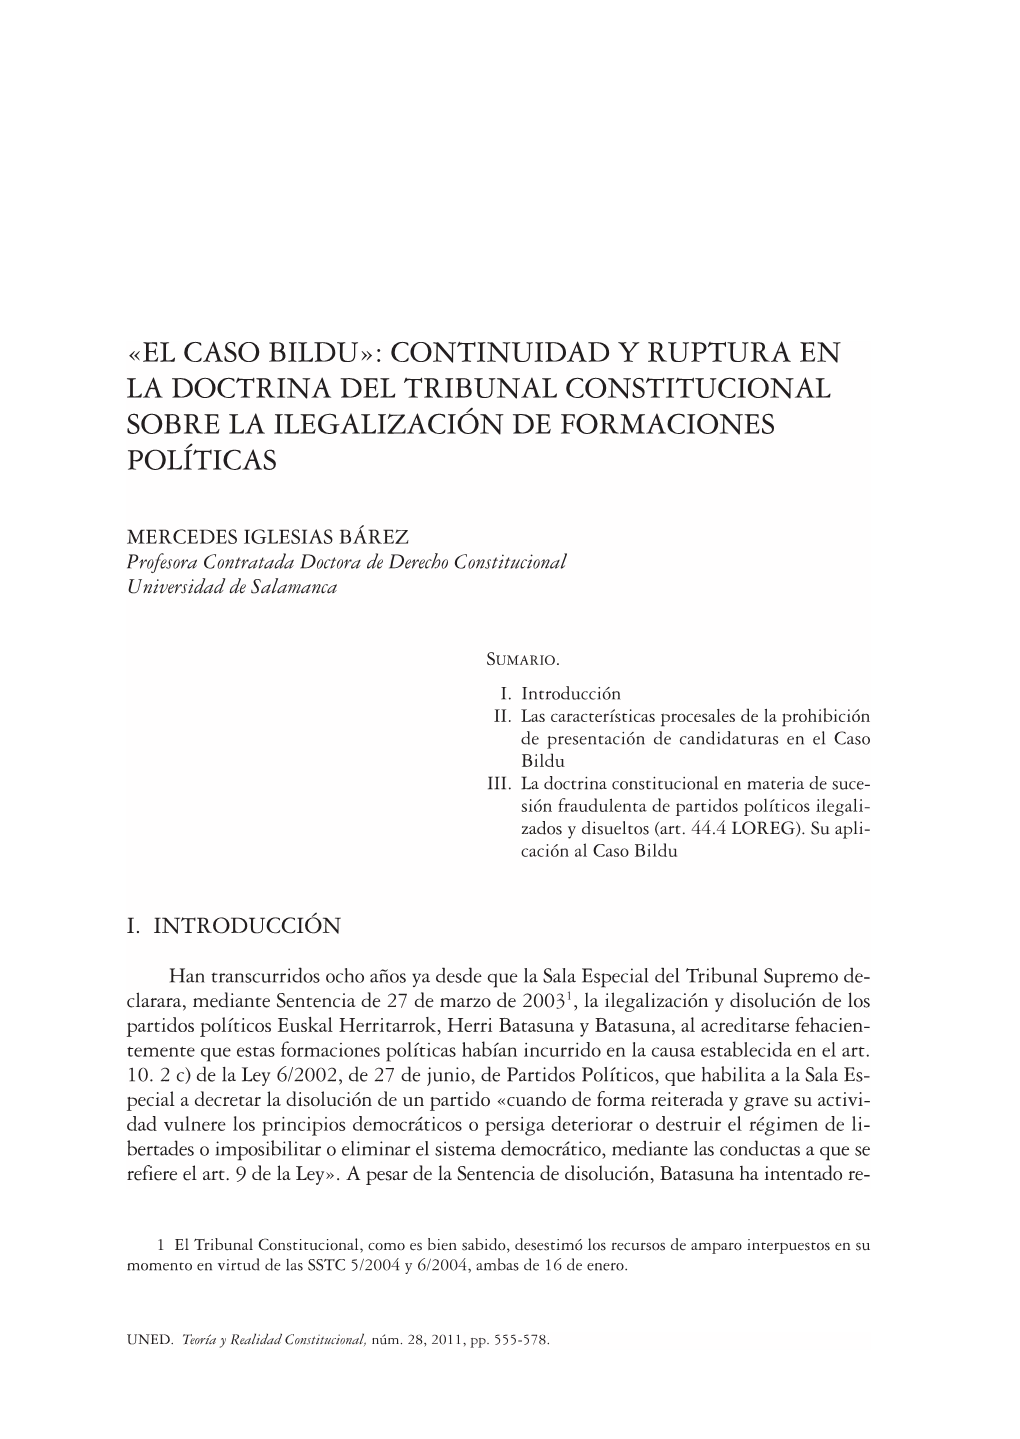 El Caso Bildu»: Continuidad Y Ruptura En La Doctrina Del Tribunal Constitucional Sobre La Ilegalización De Formaciones Políticas